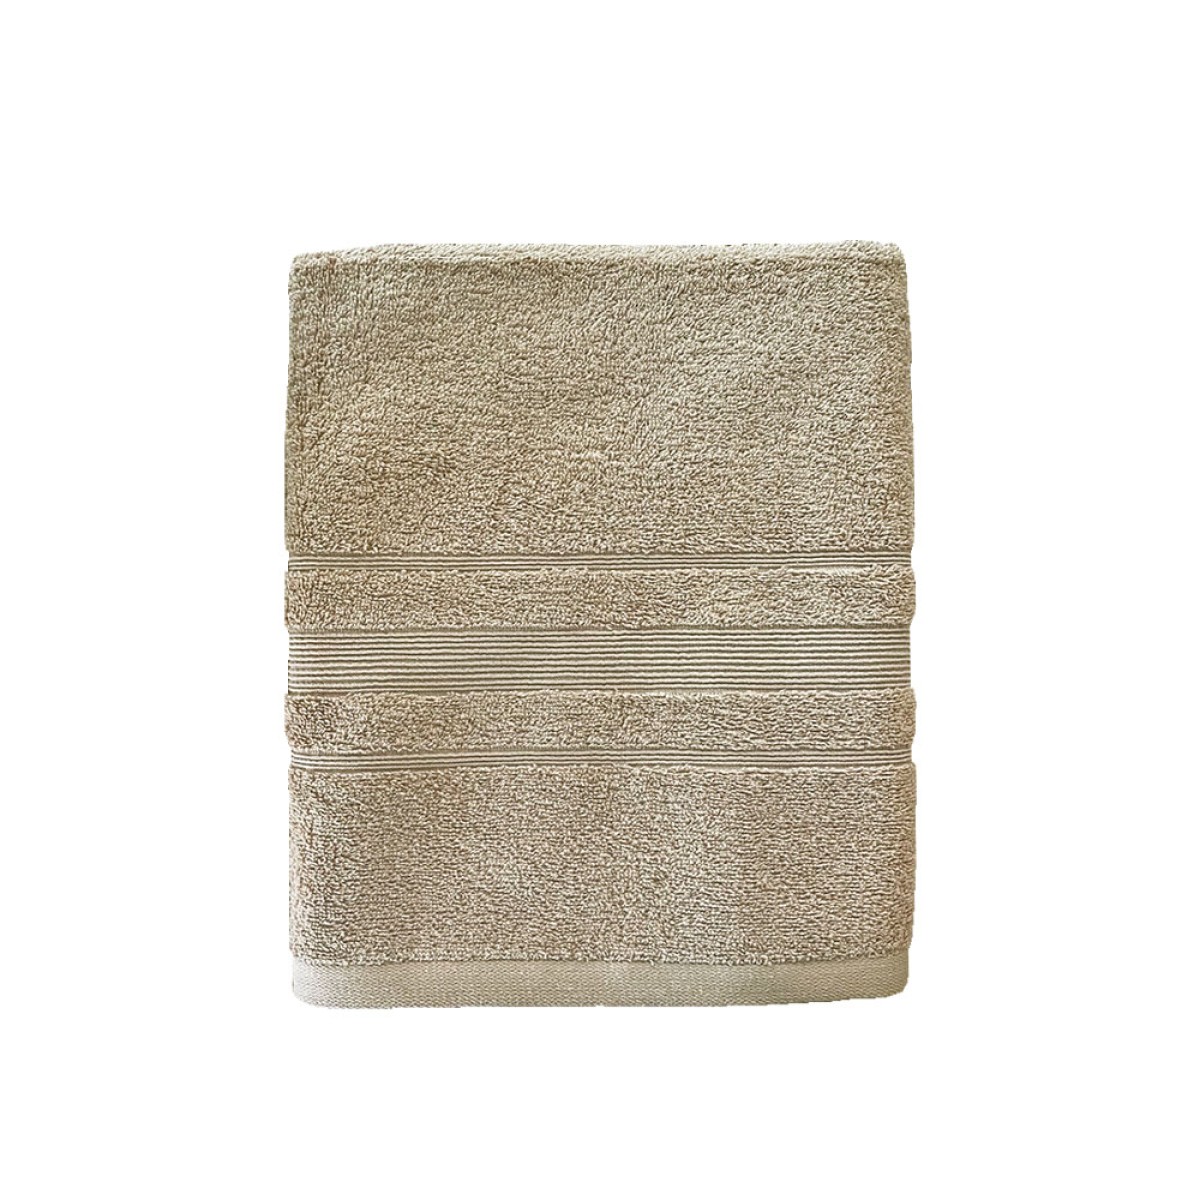 Πετσέτα Προσώπου 550grs (50x90) 100% Βαμβάκι με μπορντούρα με ανάγλυφο σχέδιο μπεζ χρώμα Sidirela Line E-3202-2